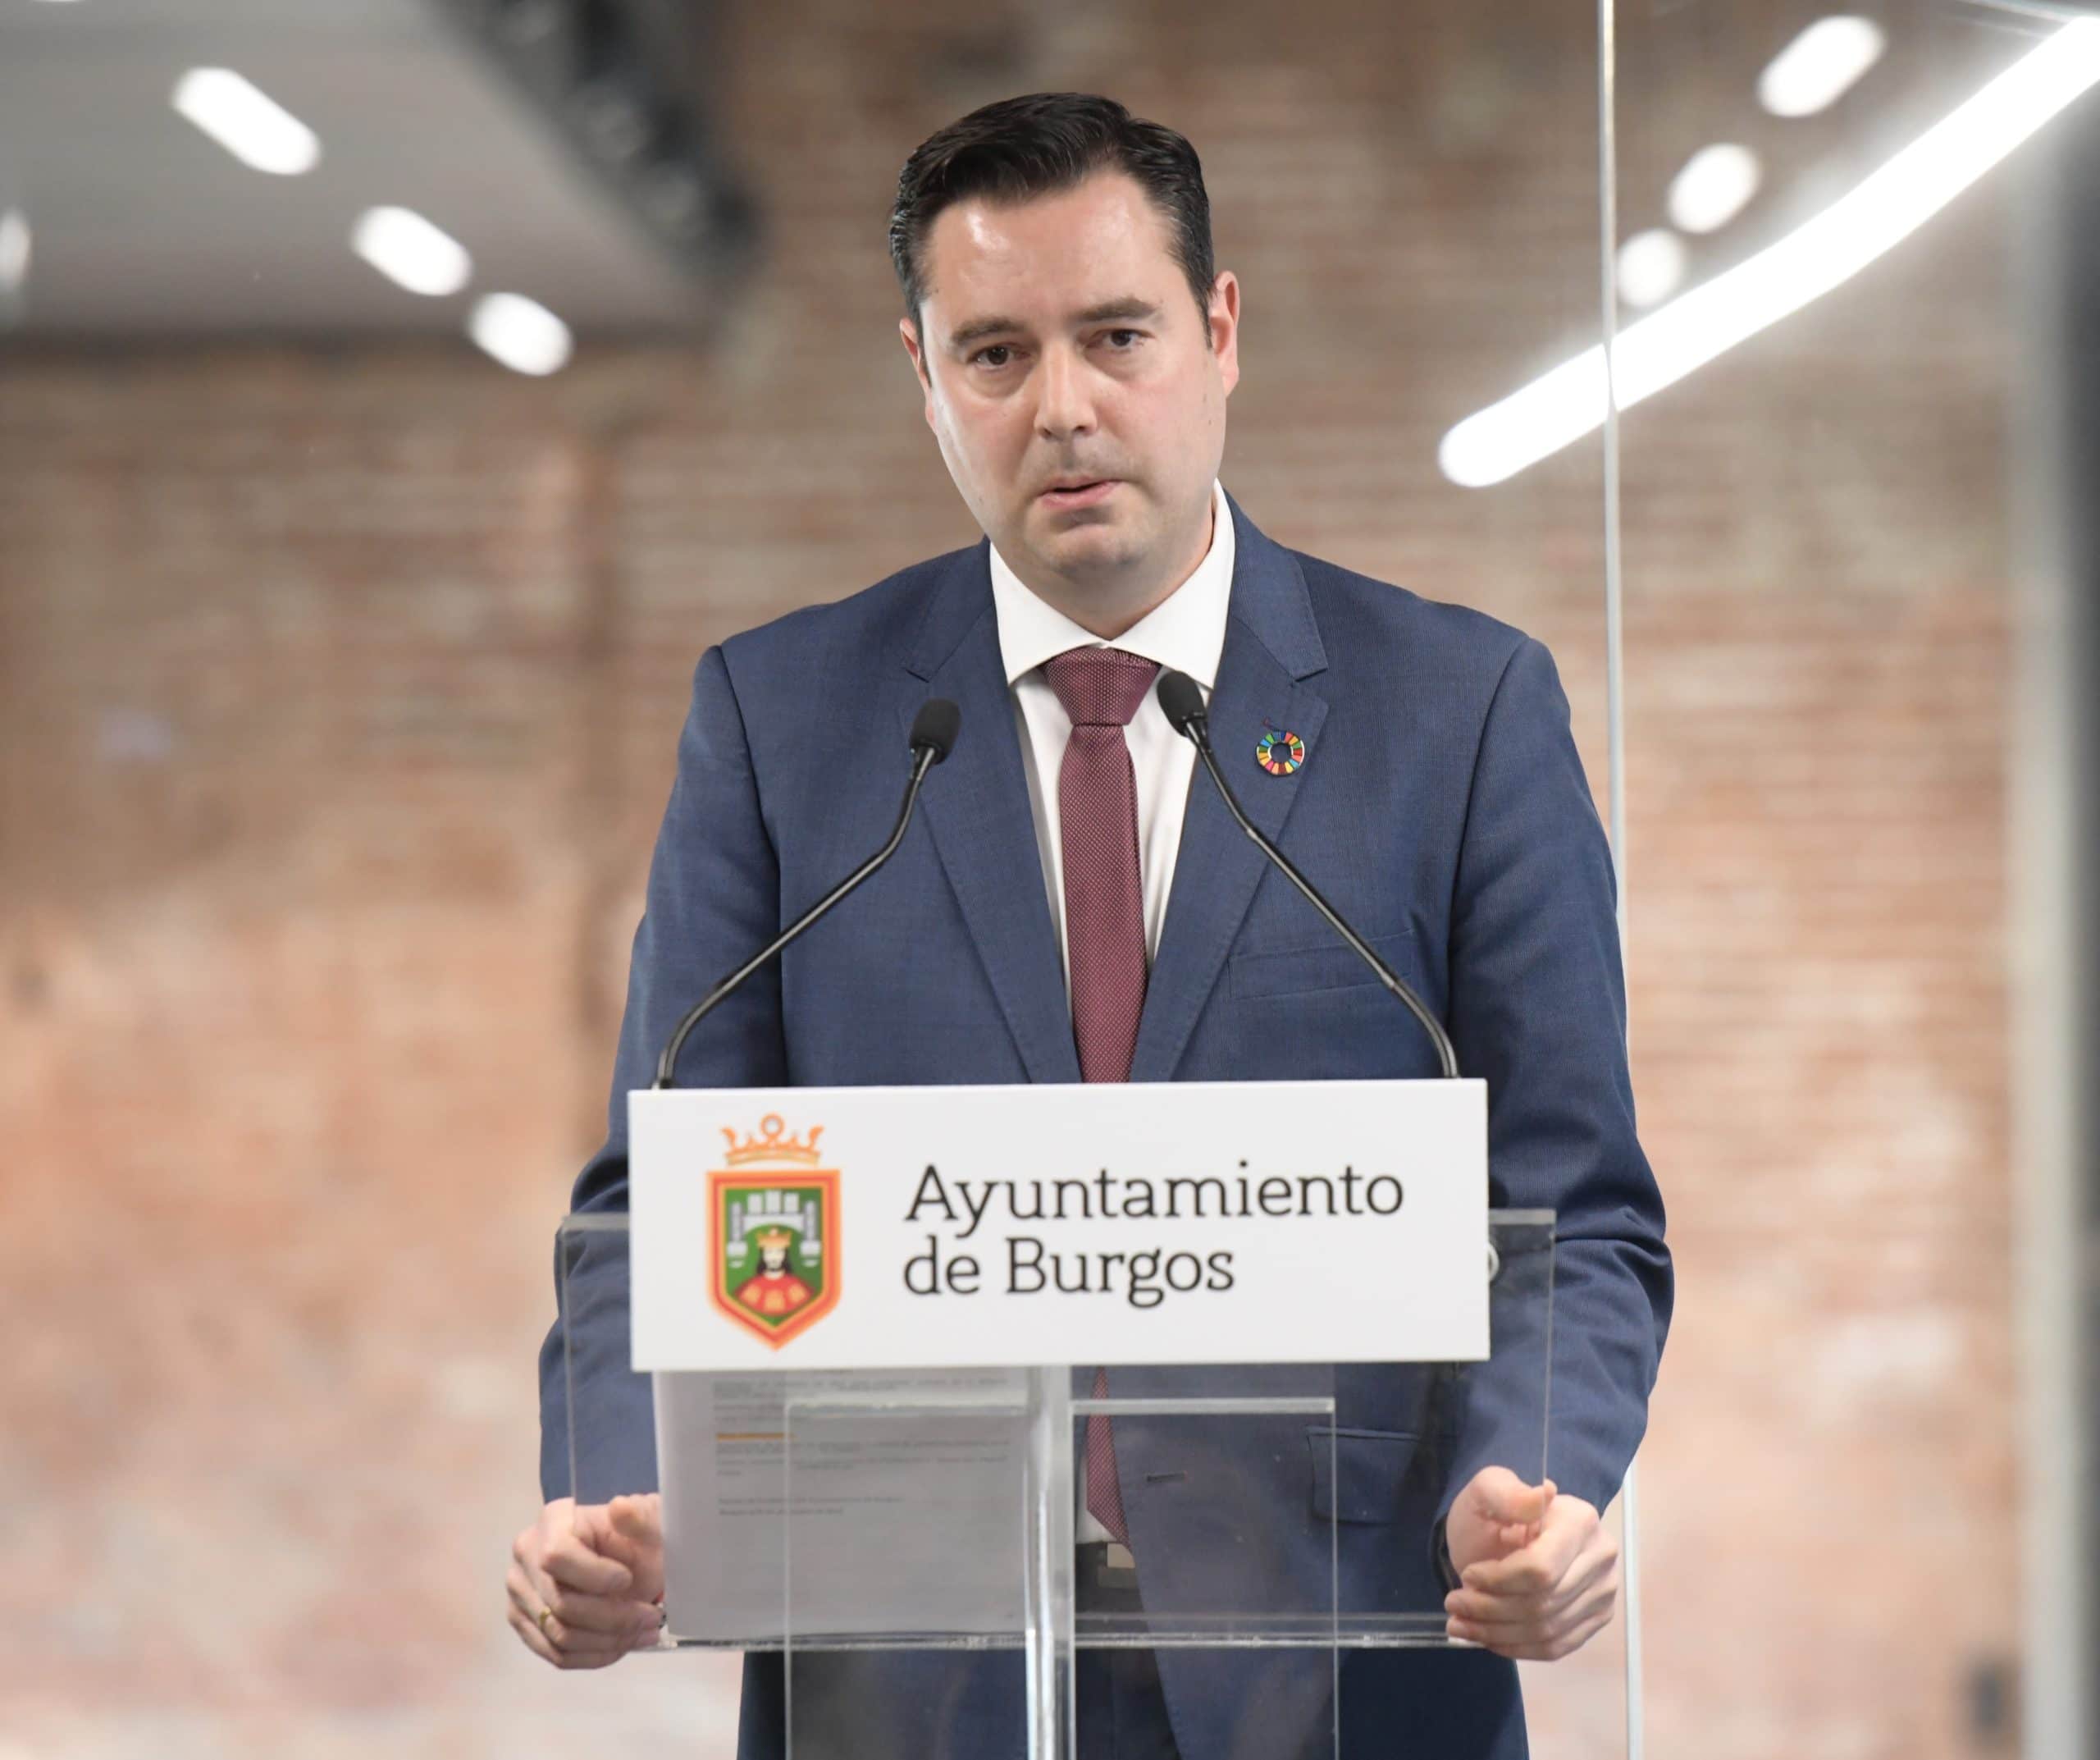 El Presupuesto del Ayuntamiento de Burgos crece 600.000 euros y llega este año a 195 millones